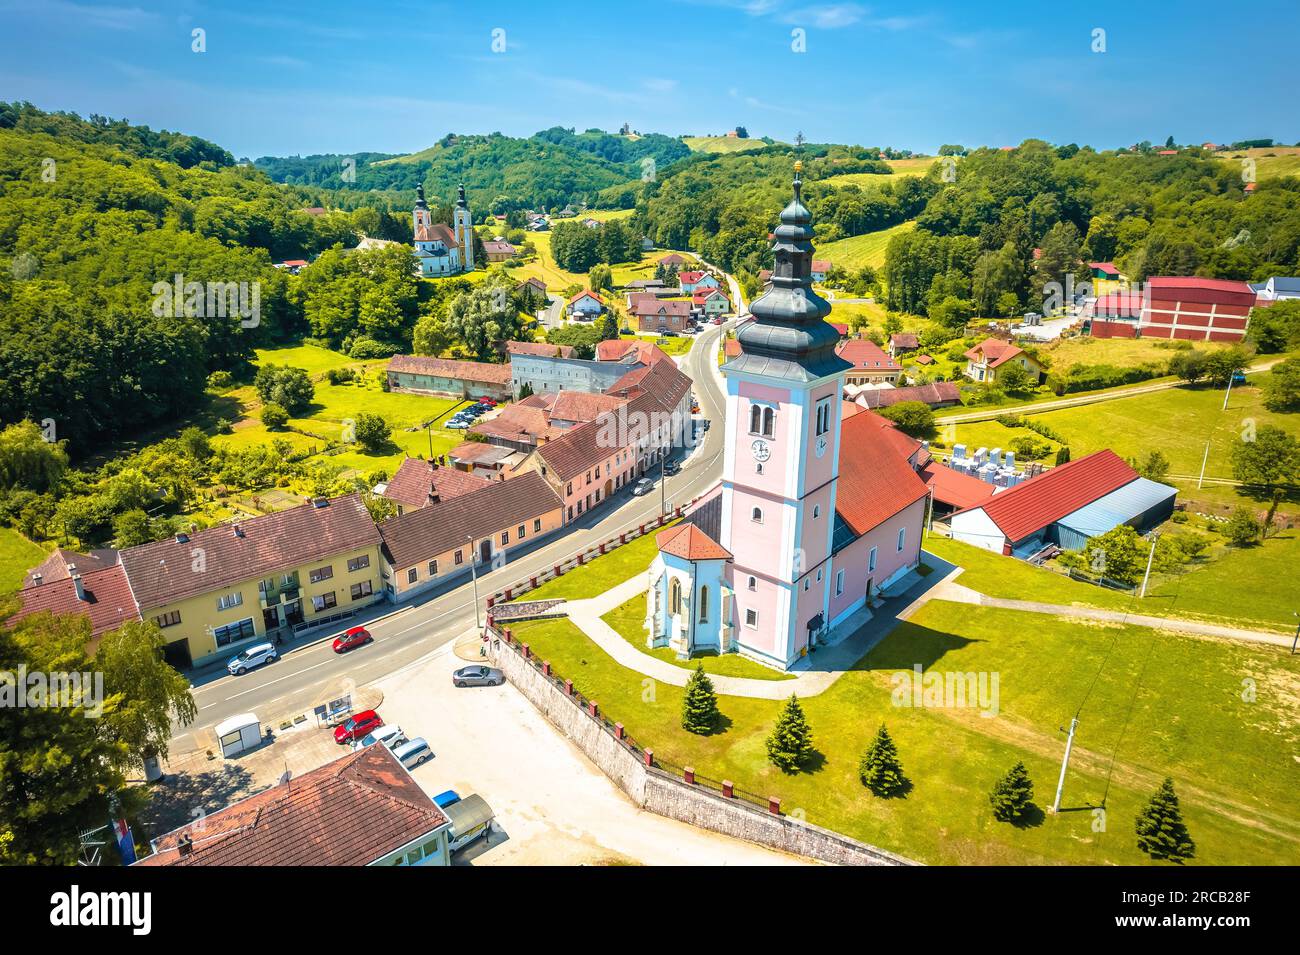 Dorf Strigova Türme und grüne Landschaft aus der Vogelperspektive, Medjimurje Region von Kroatien Stockfoto